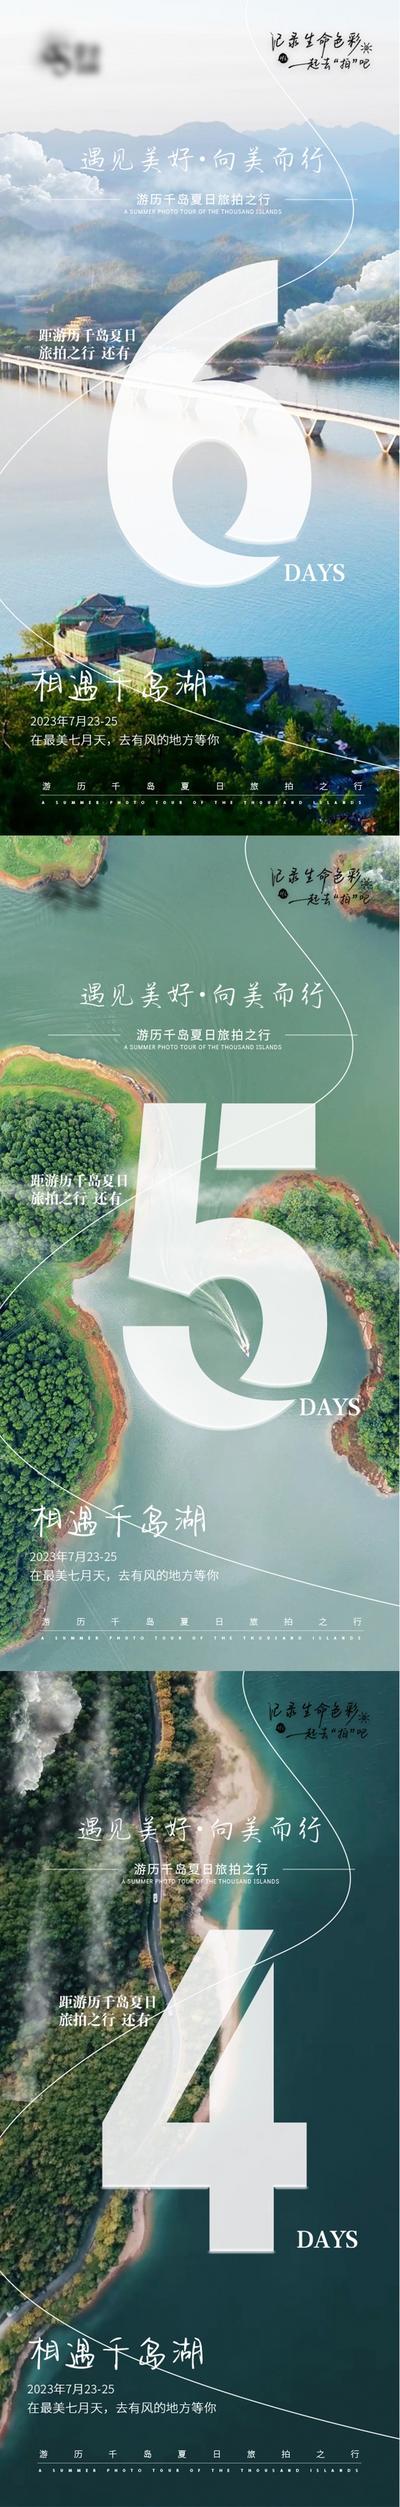 南门网 海报 旅游 千岛湖 倒计时 数字 湖景 系列